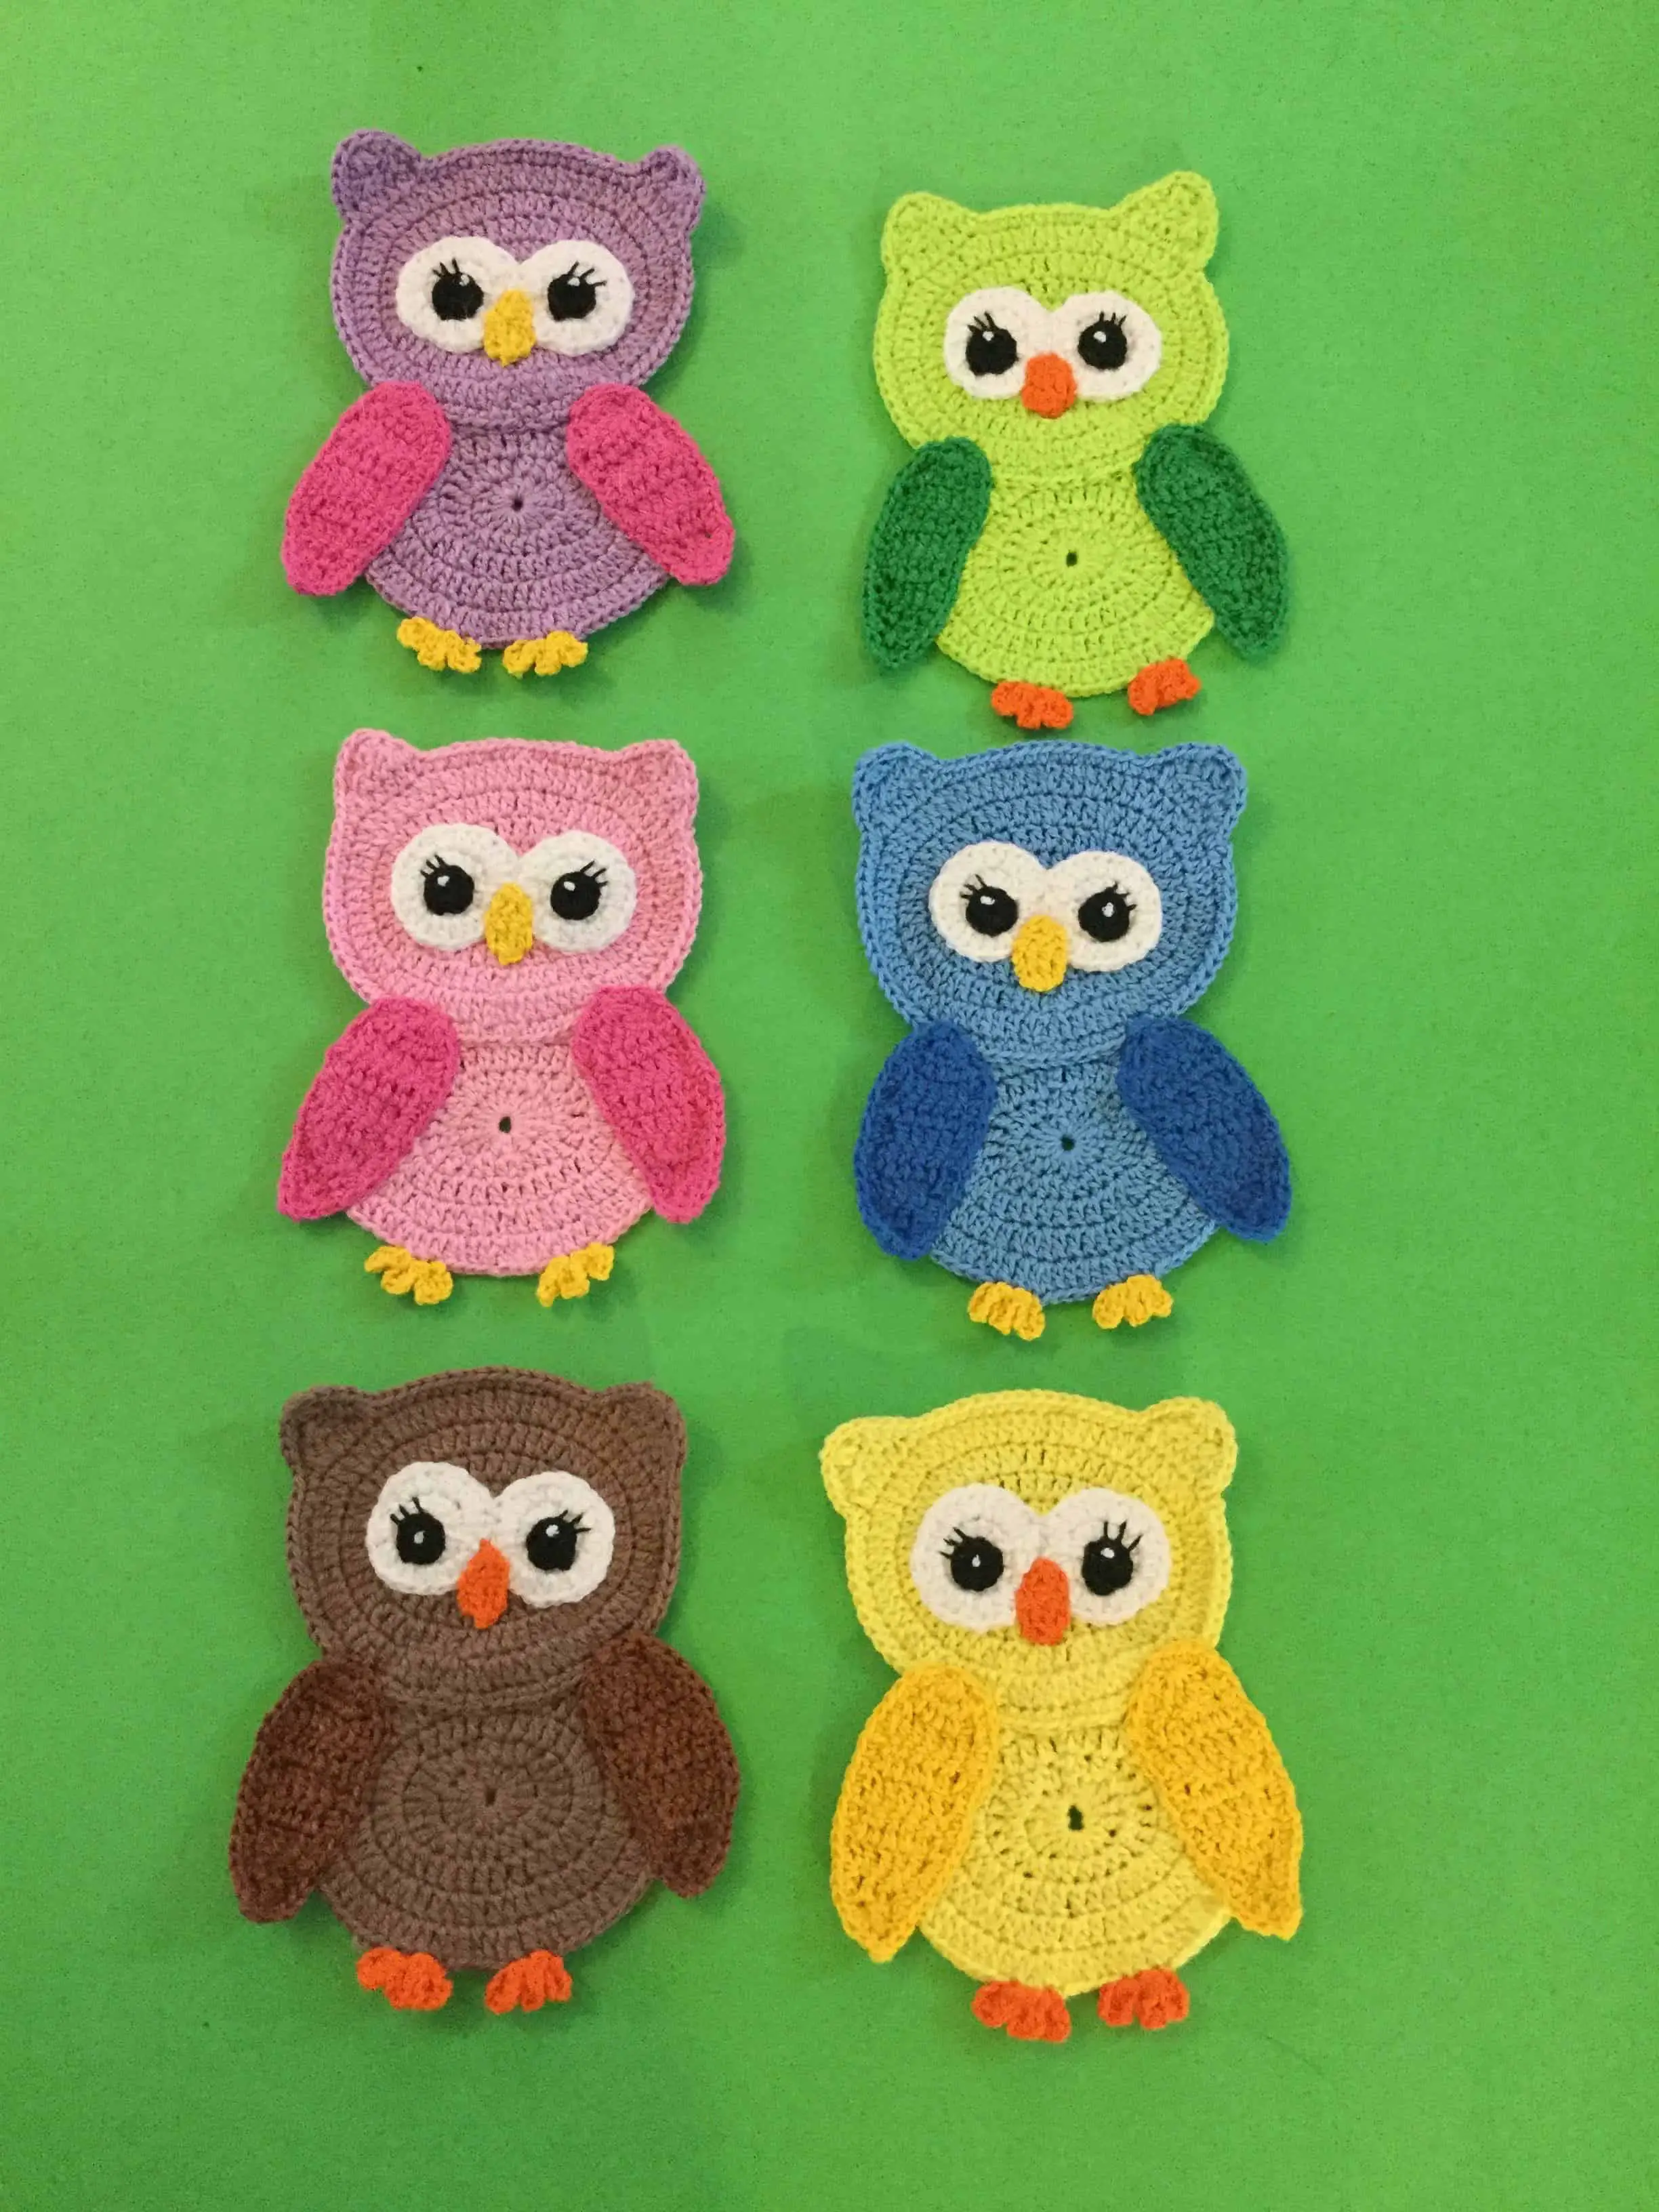 crochet-owl-pattern-kerri-s-crochet